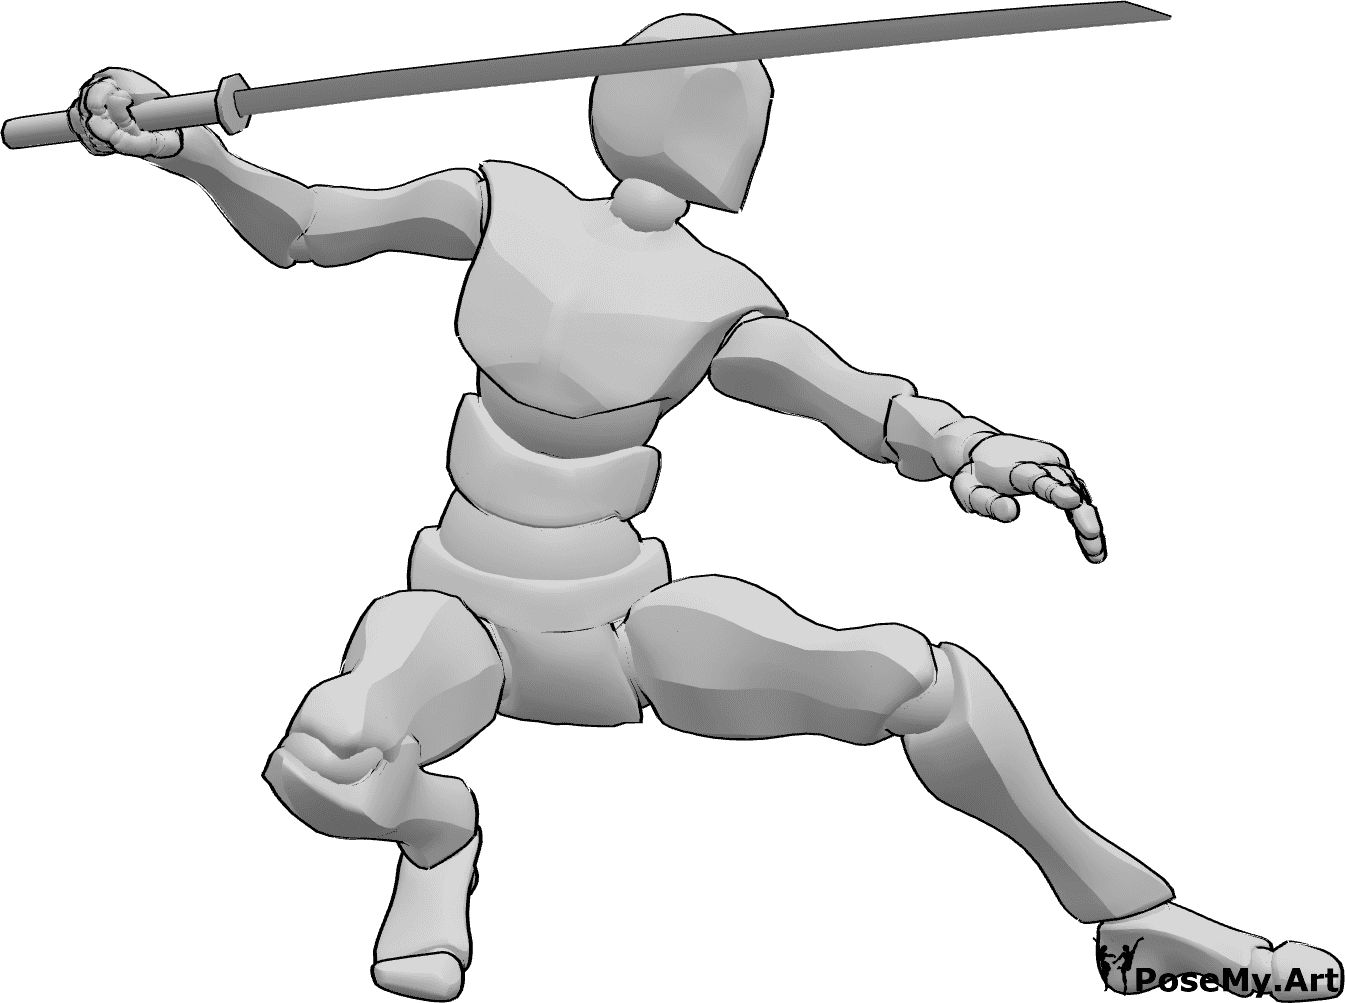 Referencia de poses- Postura de katana agachada - Hombre agachado con una katana en la mano derecha.